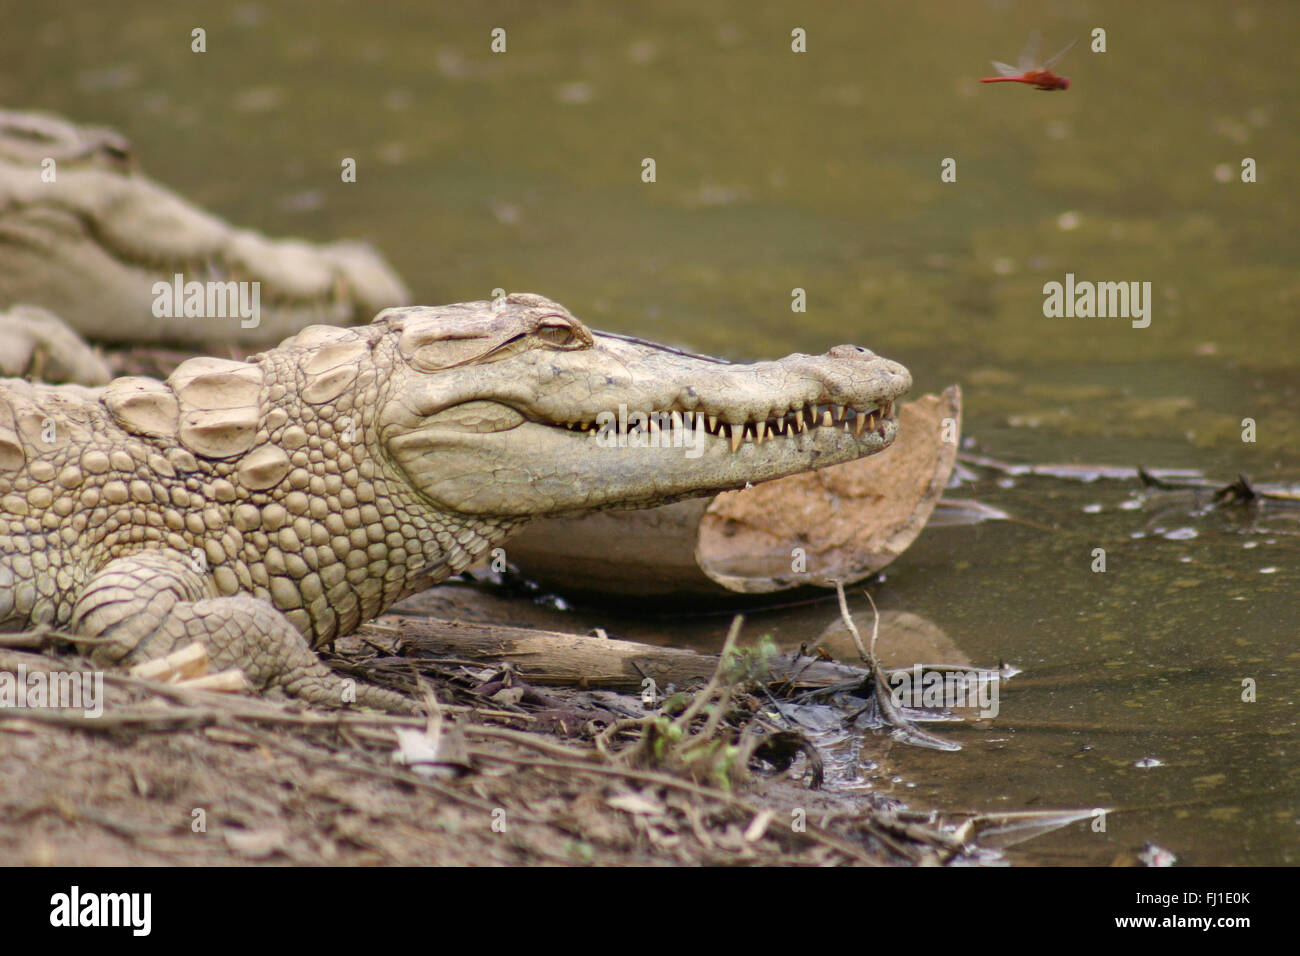 Les crocodiles dans le pays dogon, Mali - Banque D'Images